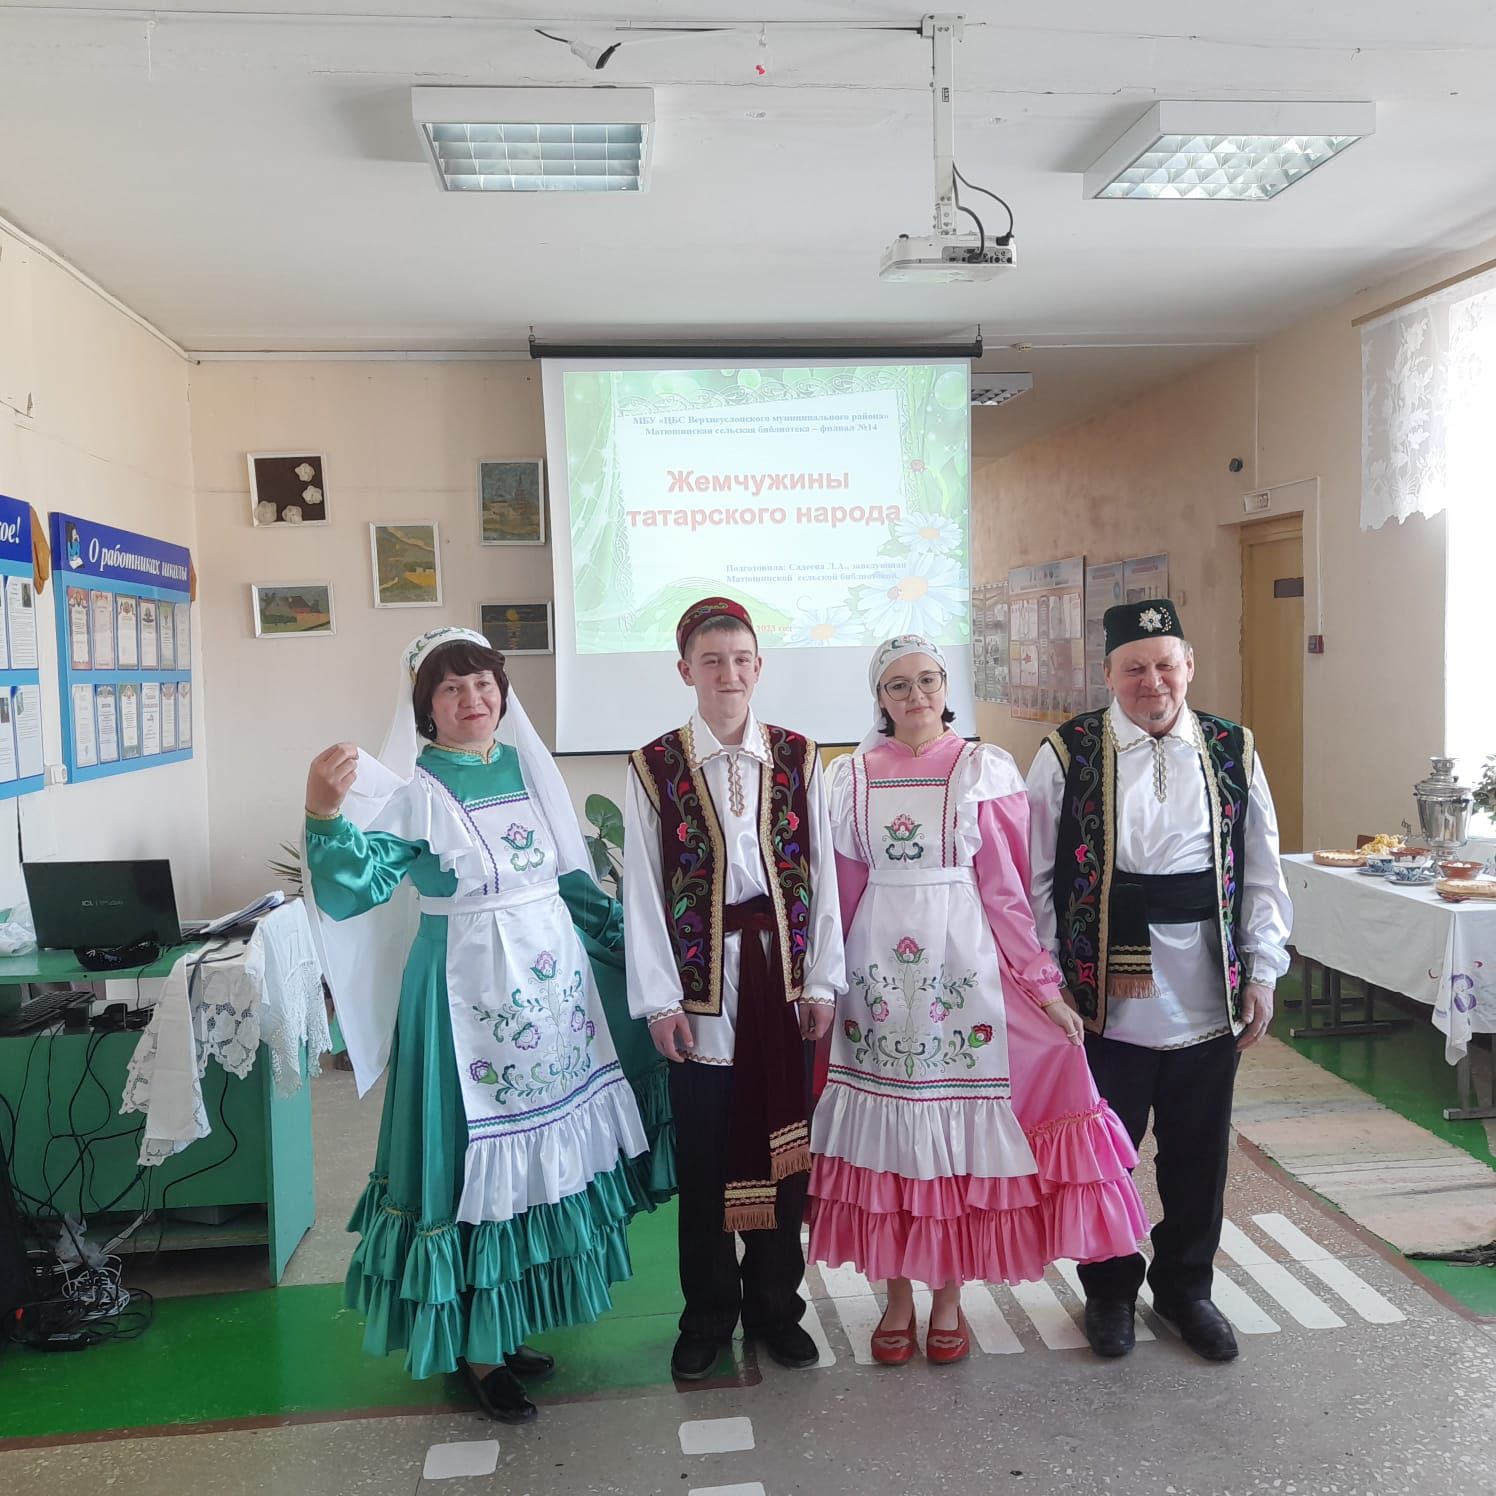 В Матюшине прошел фольклорно-музыкальный вечер «Жемчужины татарского народа»